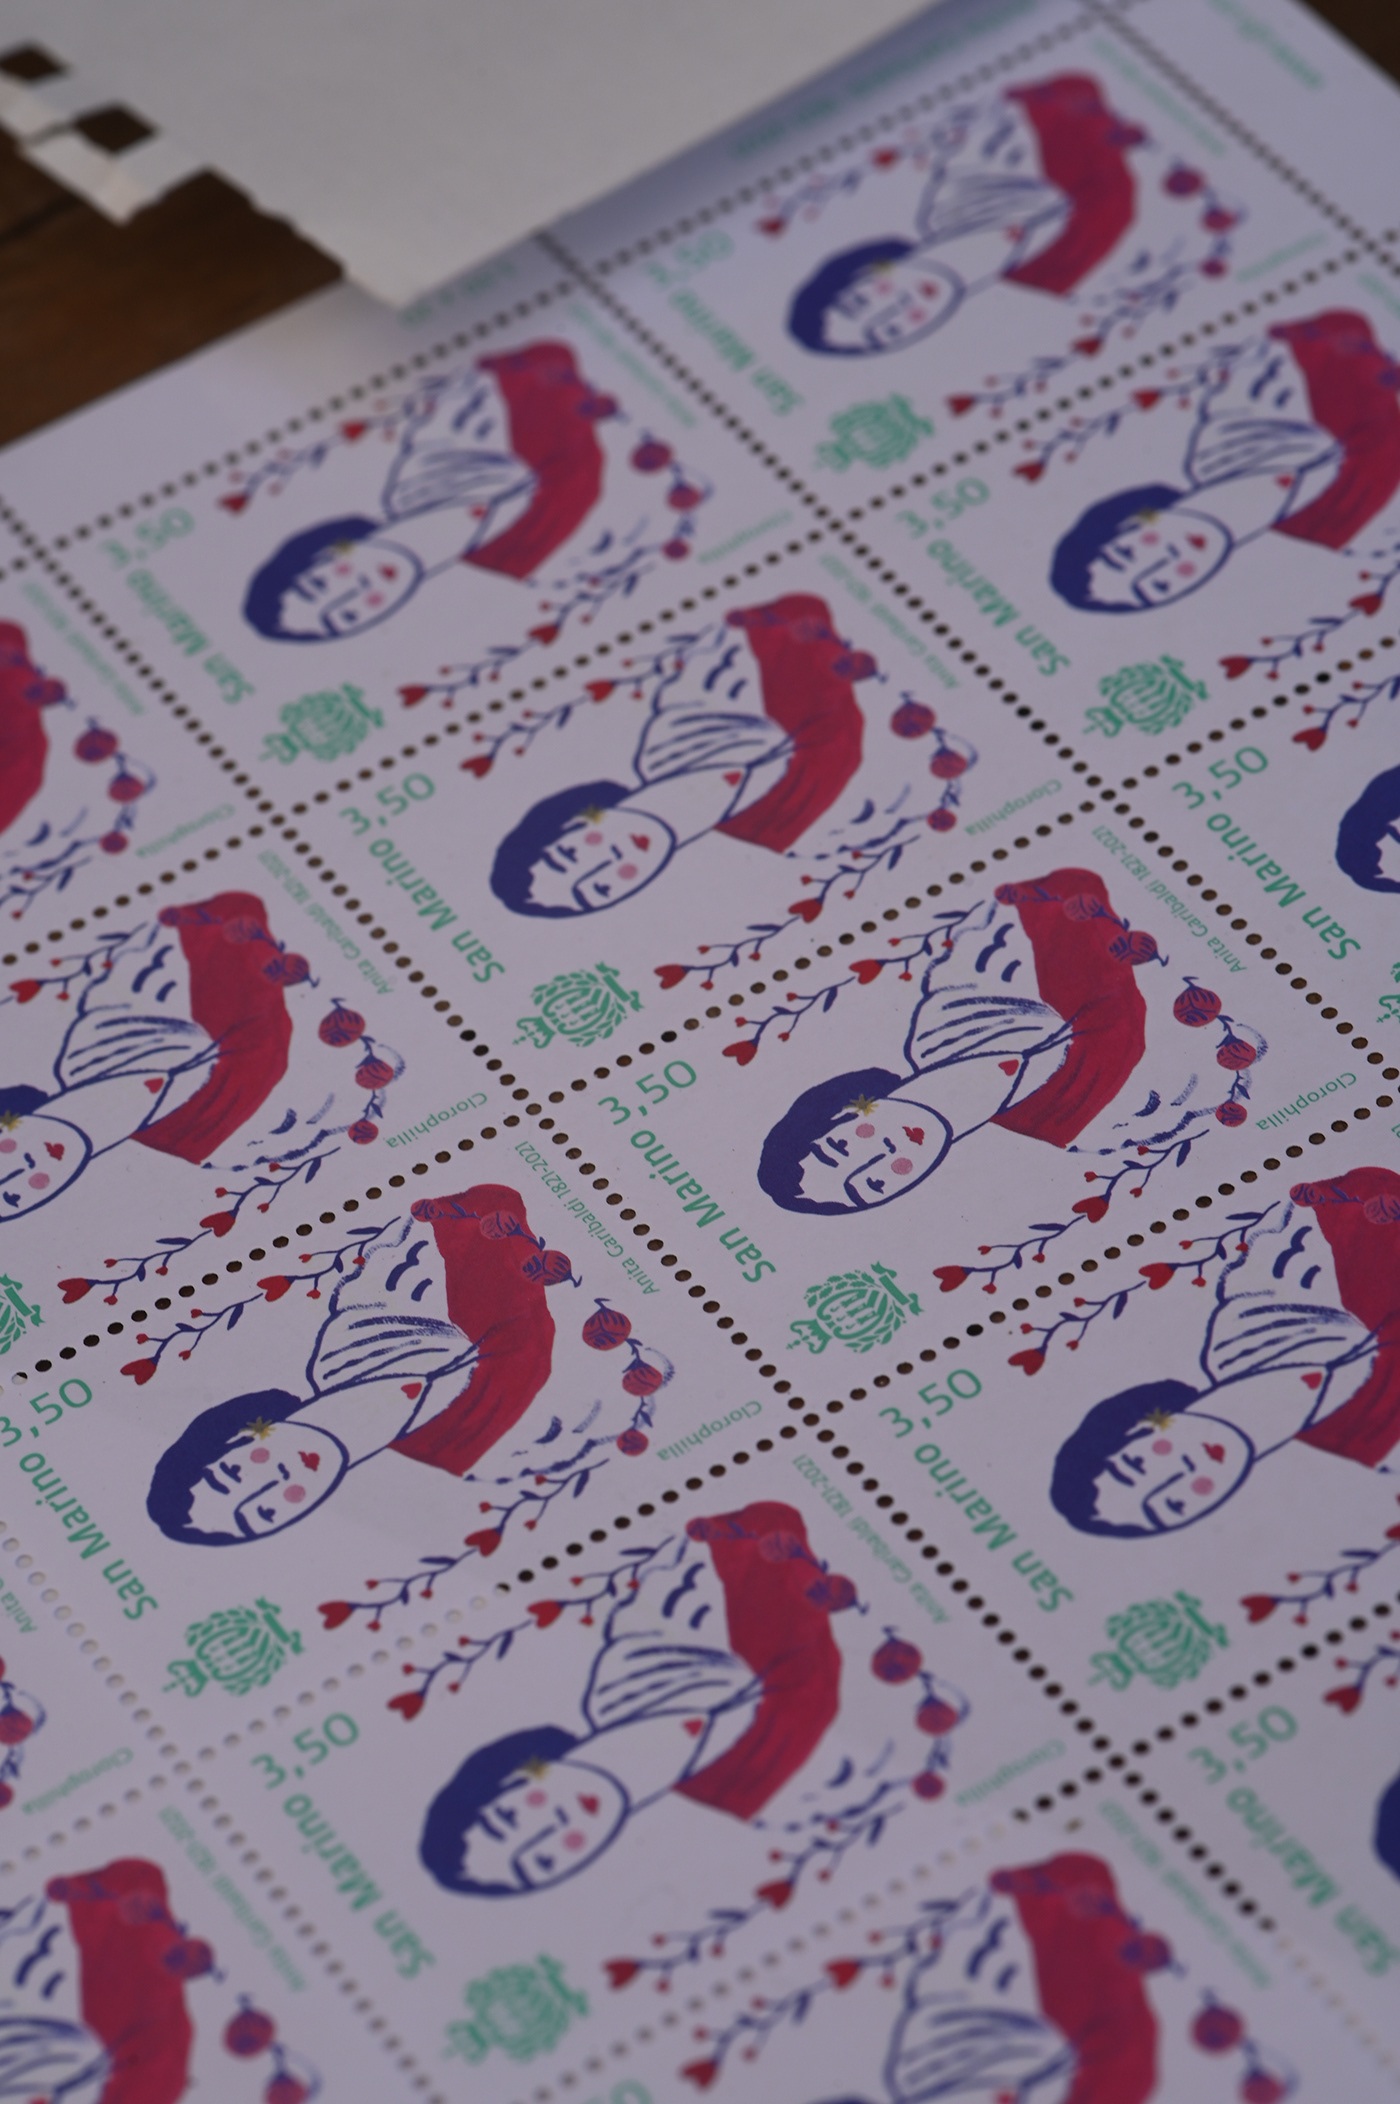 anitagaribaldi disegno francobollo illustrazione painting   repubblicasanmarino